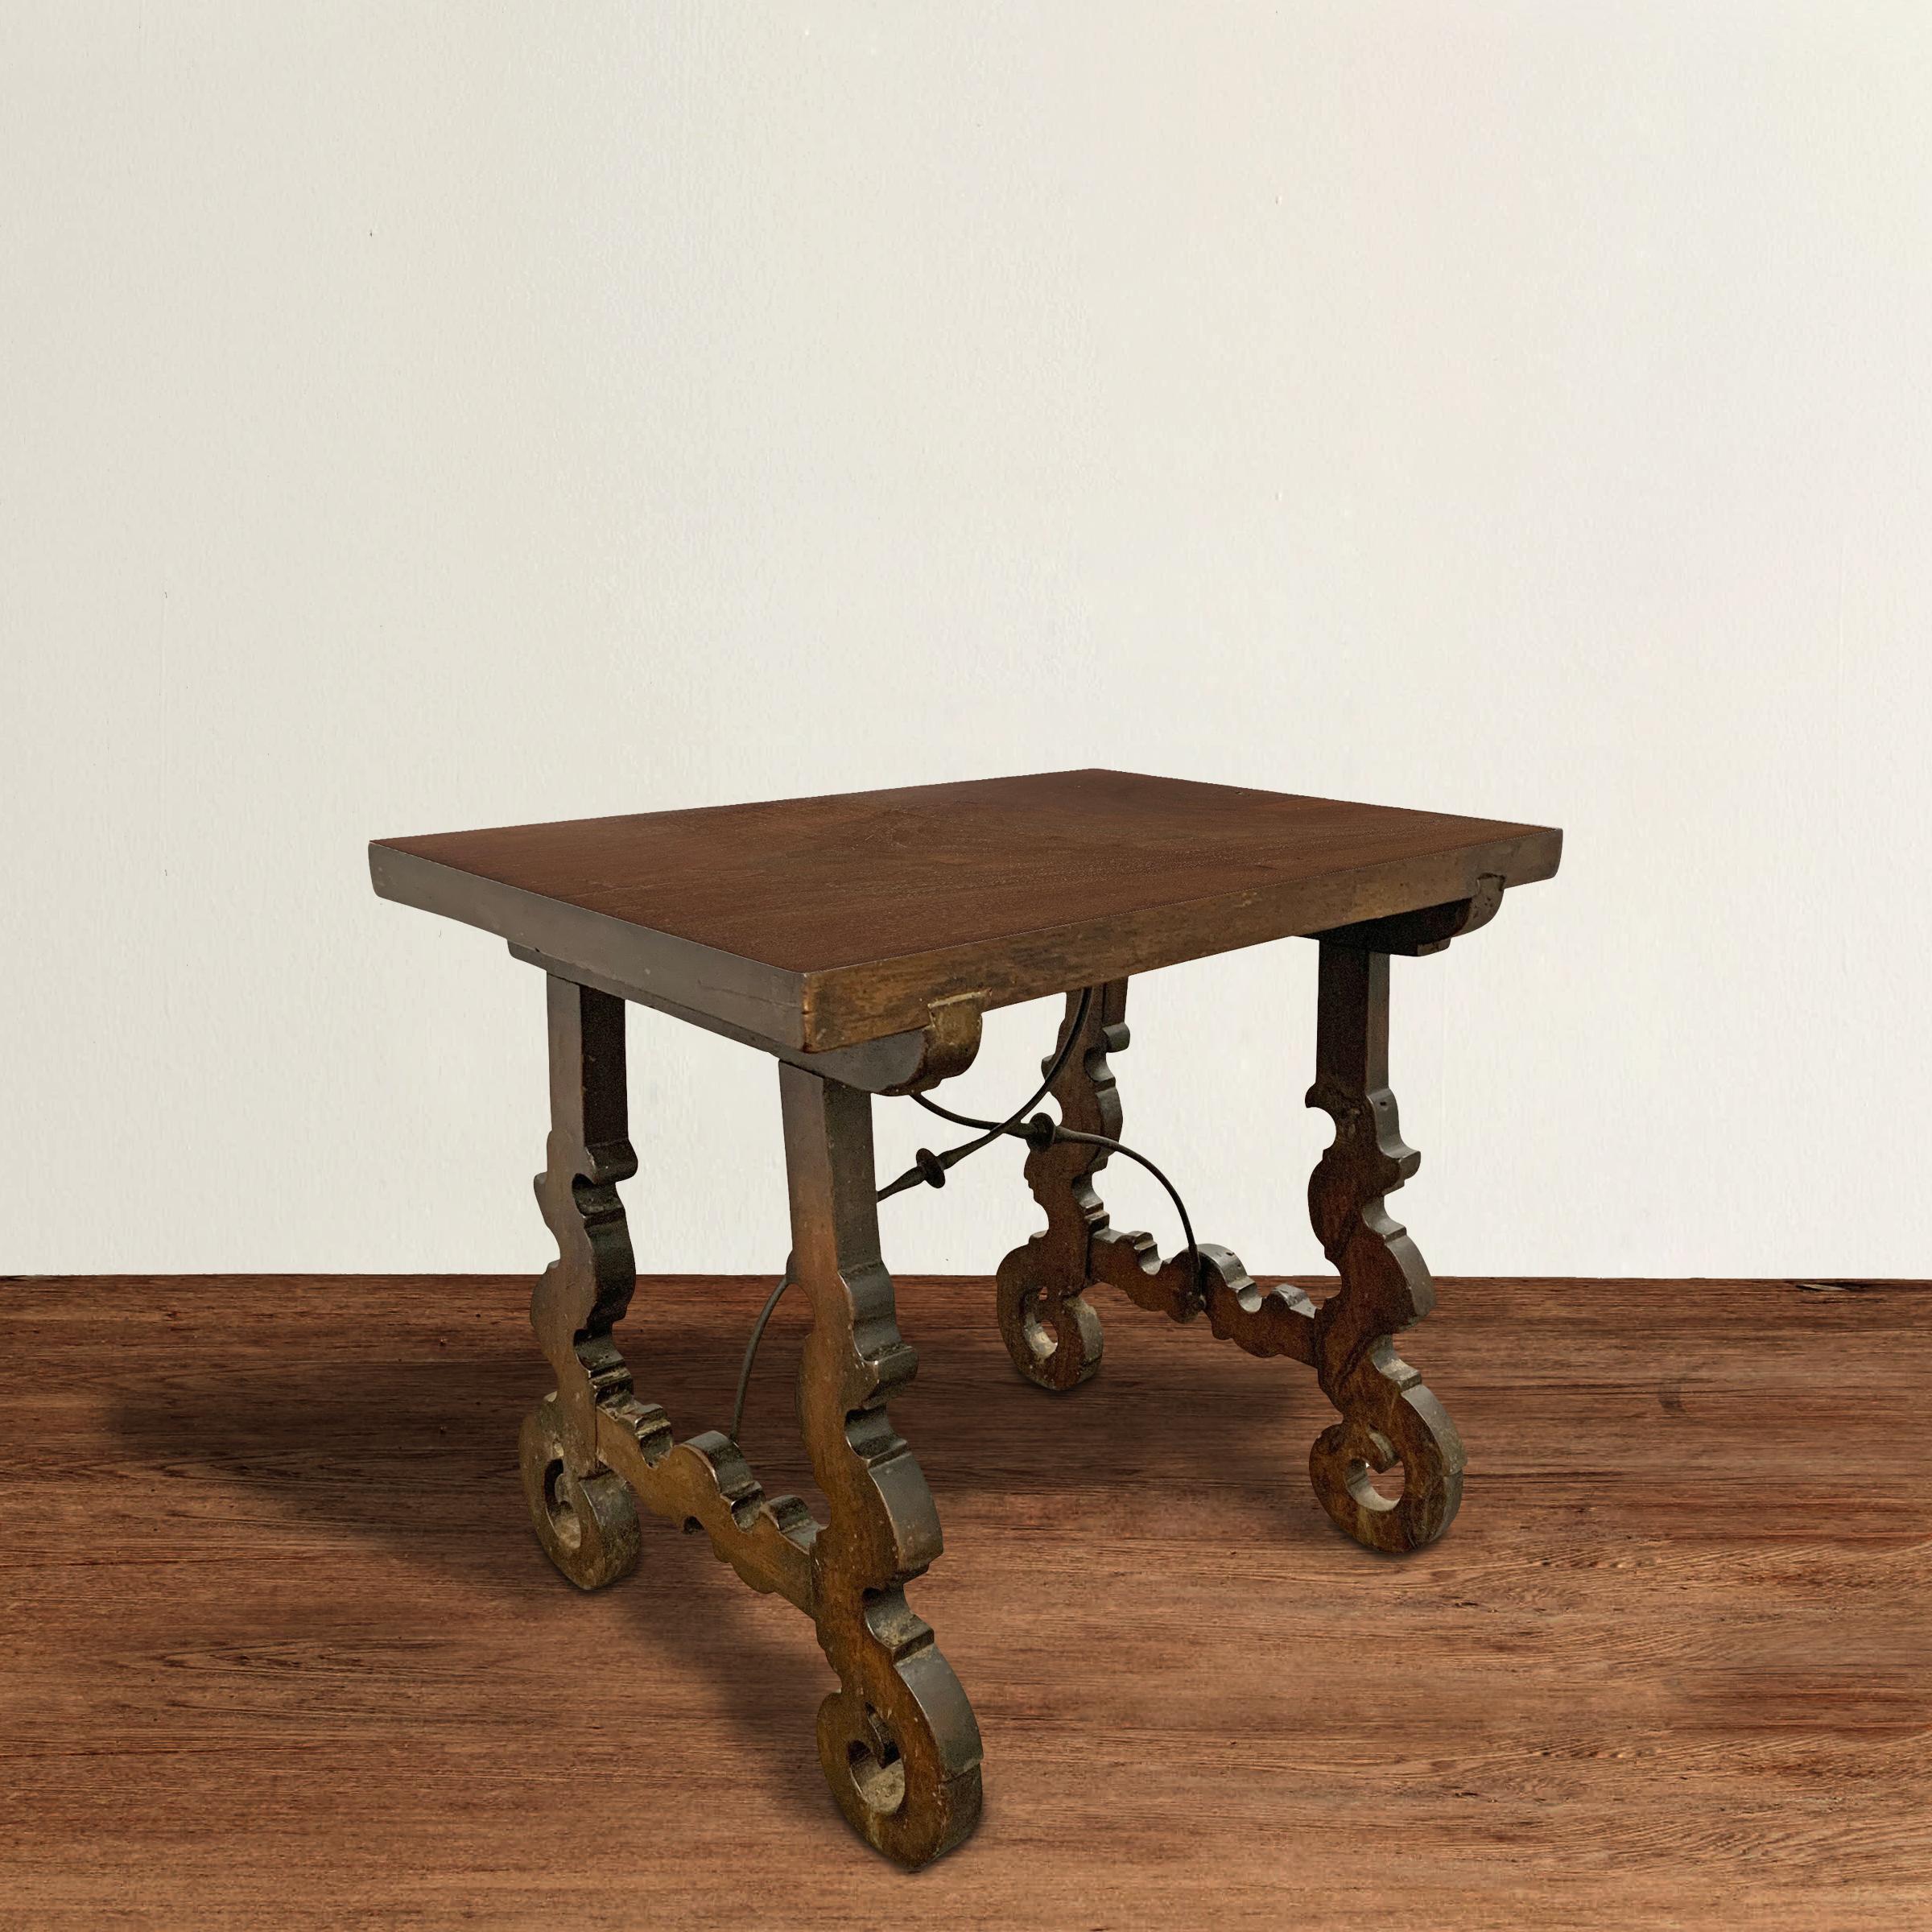 Ein wunderschöner, zierlicher spanischer Tisch aus dem 18. Jahrhundert, der aus Nussbaumholz gefertigt ist und hochgradig stilisierte, floral geschnitzte Beine hat, mit zwei handgeschmiedeten Eisenträgern, die die Basis stützen. Die Platte wurde neu